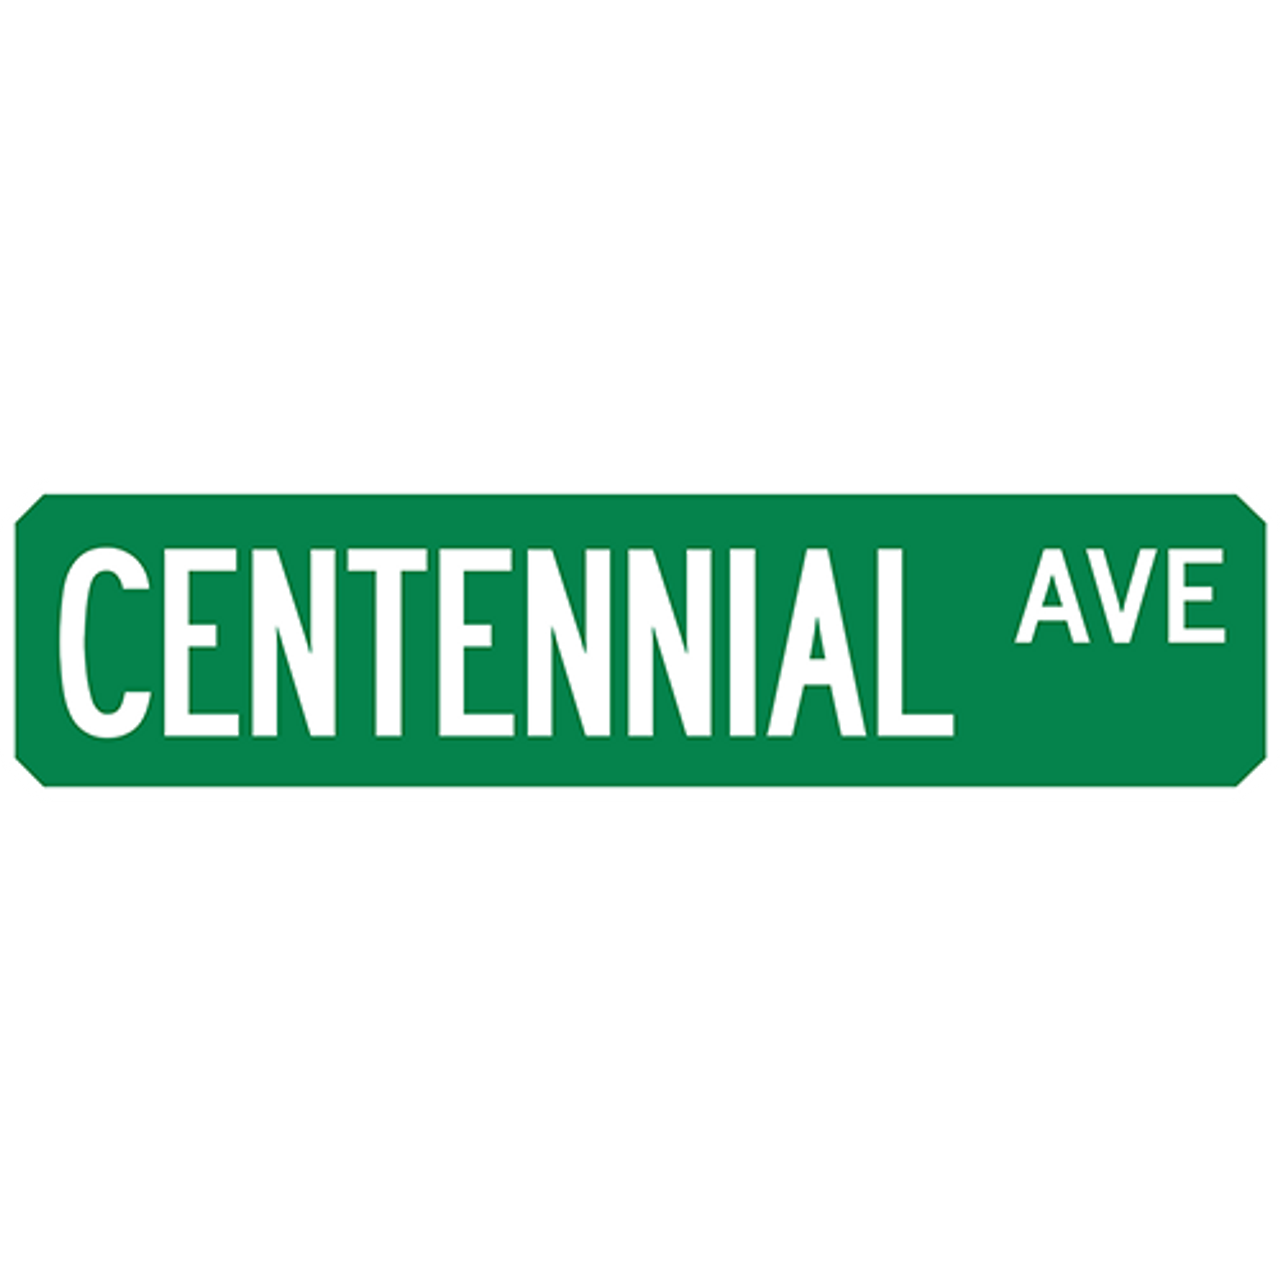 Centennial Ave Street Sign Muncie